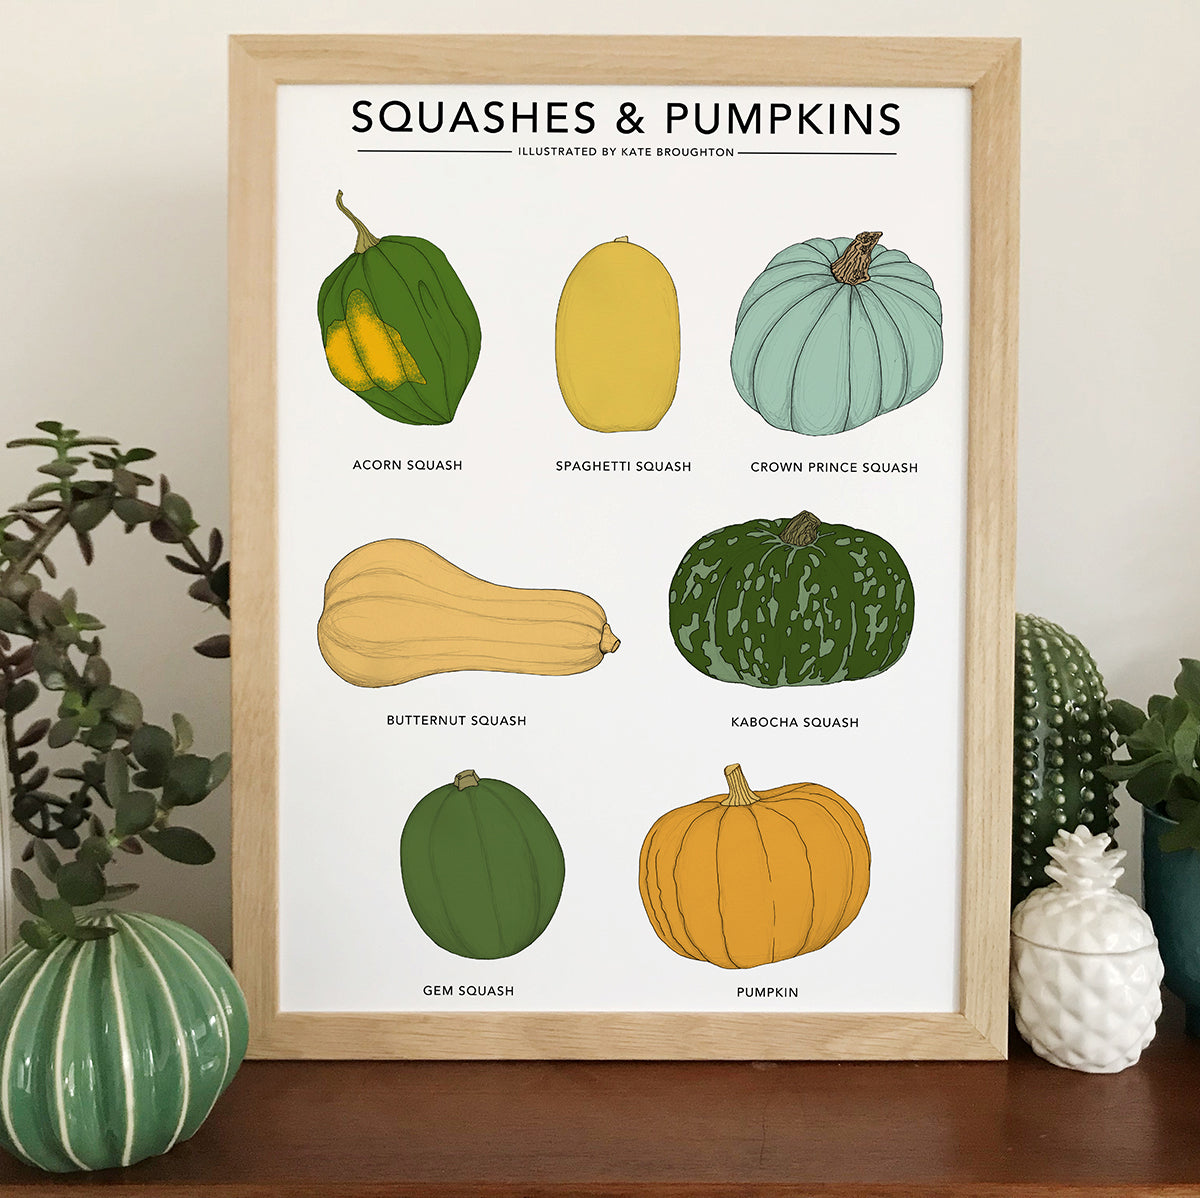 Squashes & Pumpkins Print